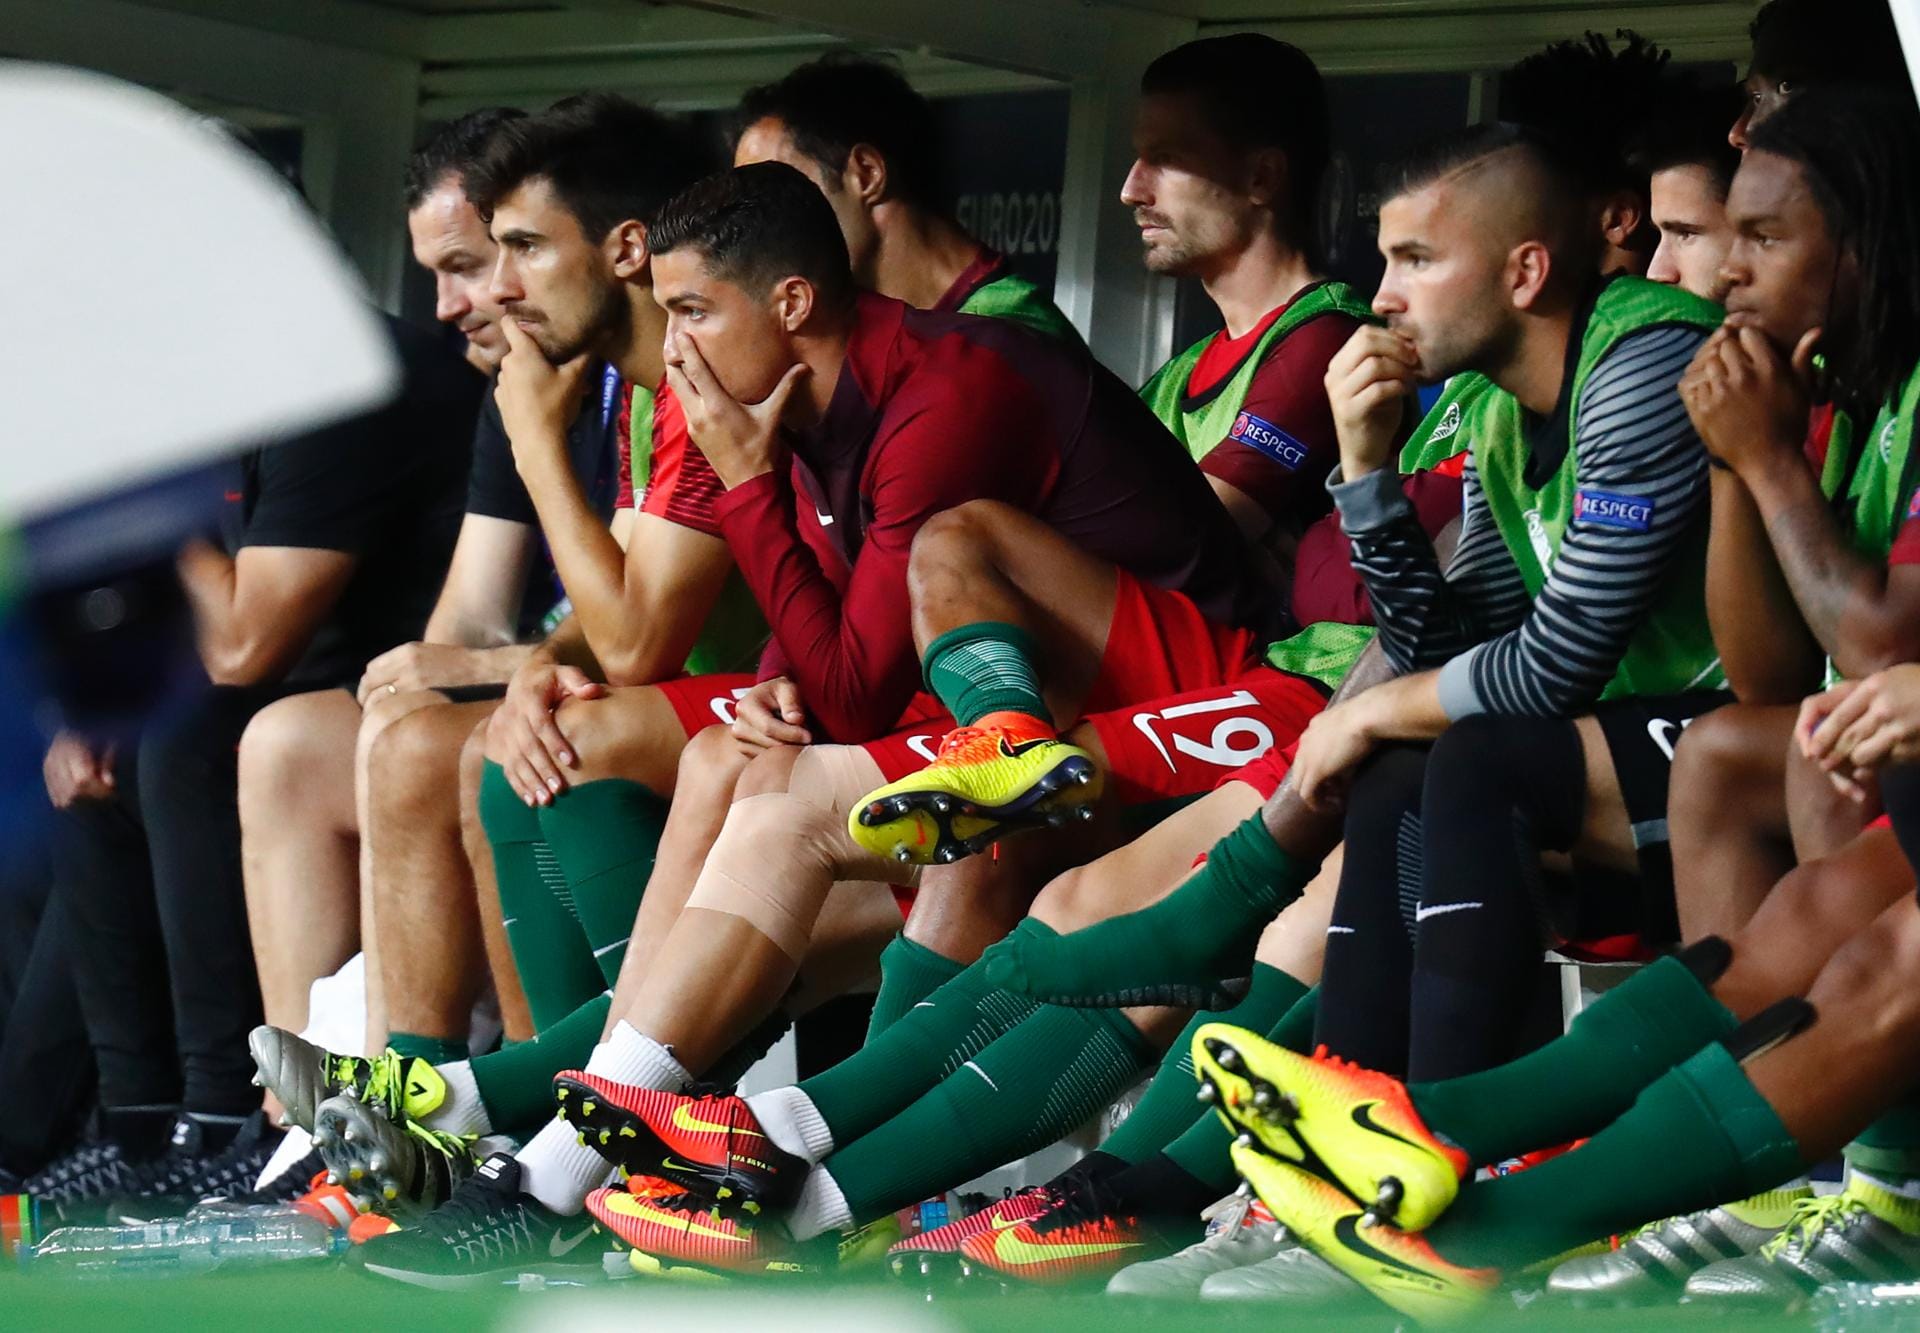 Zur Verlängerung sitzt der verletzte Ronaldo auf der Bank und unterstützt sein Team. Auf dem Platz passiert allerdings nicht viel, die Teams belauern sich zumeist.